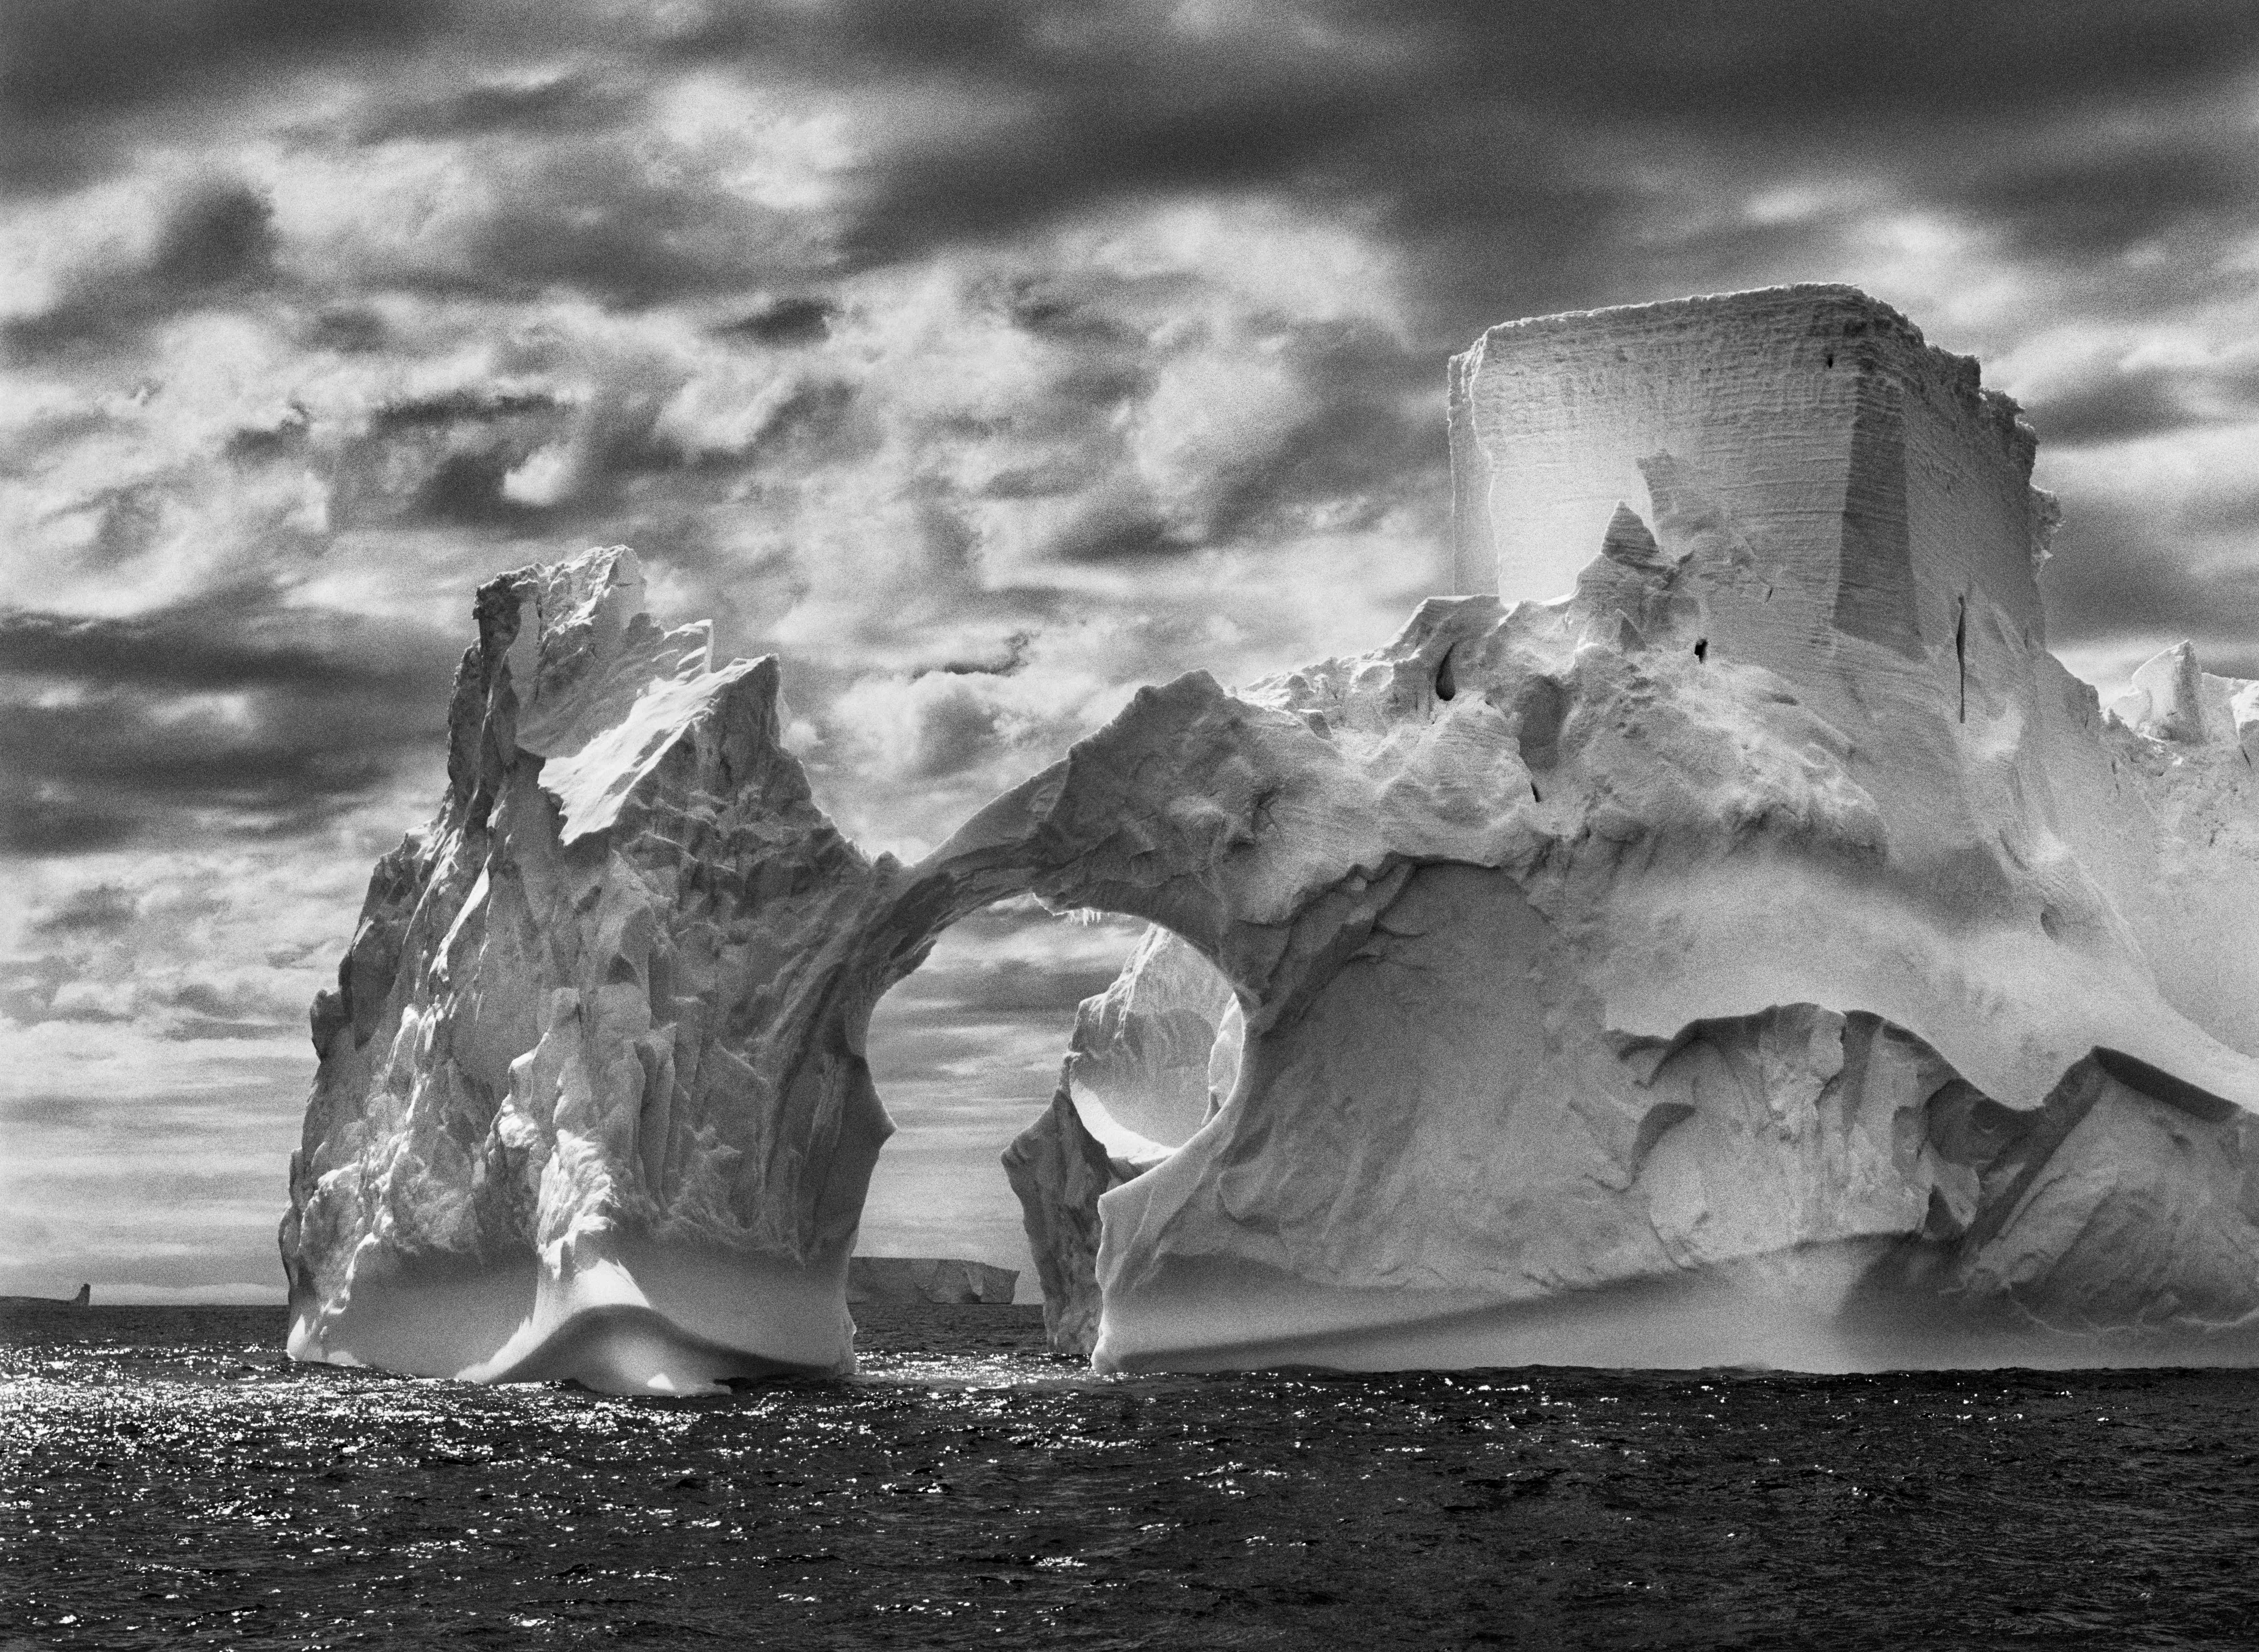 Айсберг близ Южных Шетландских островов, Антарктида, 2005. Автор Себастьян Сальгадо